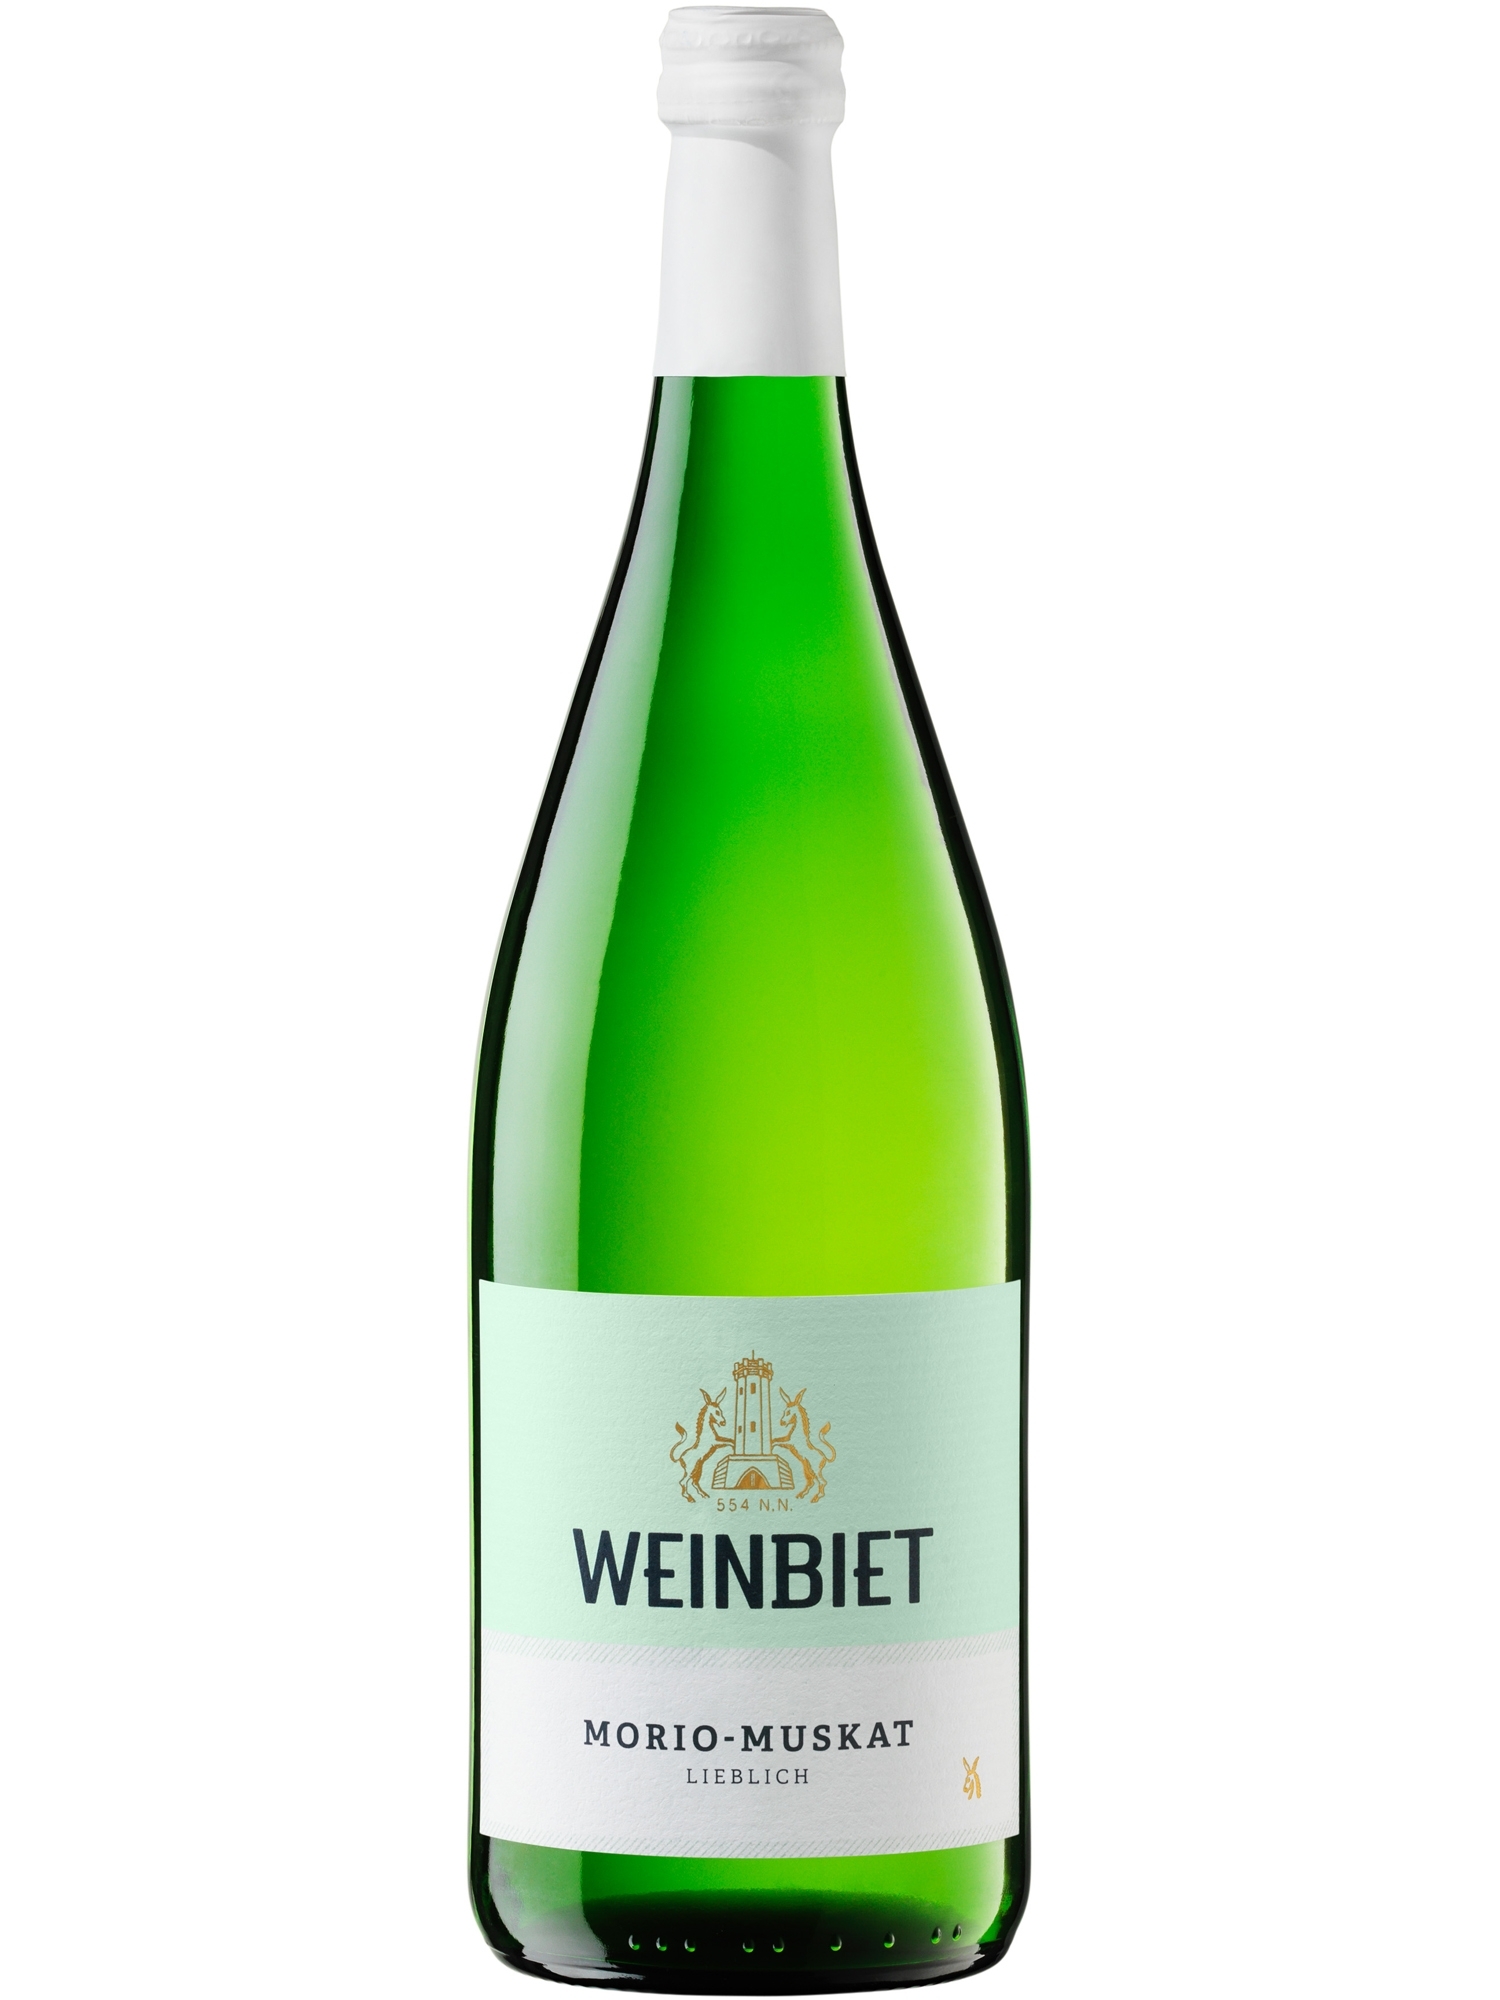 morio-muskat lieblich - Weinbiet | Pfalz Wein Online